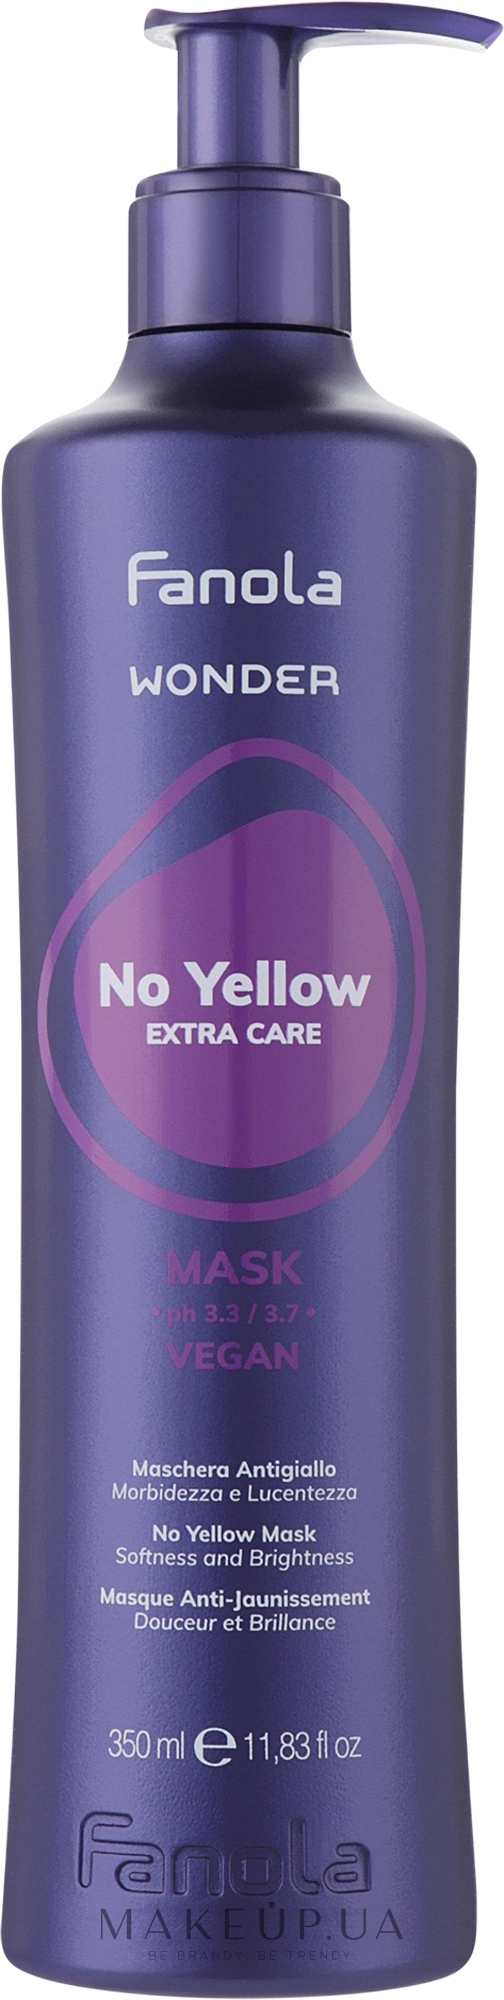 Маска антижелтая для волос - Fanola Wonder No Yellow Extra Care Mask — фото 350ml